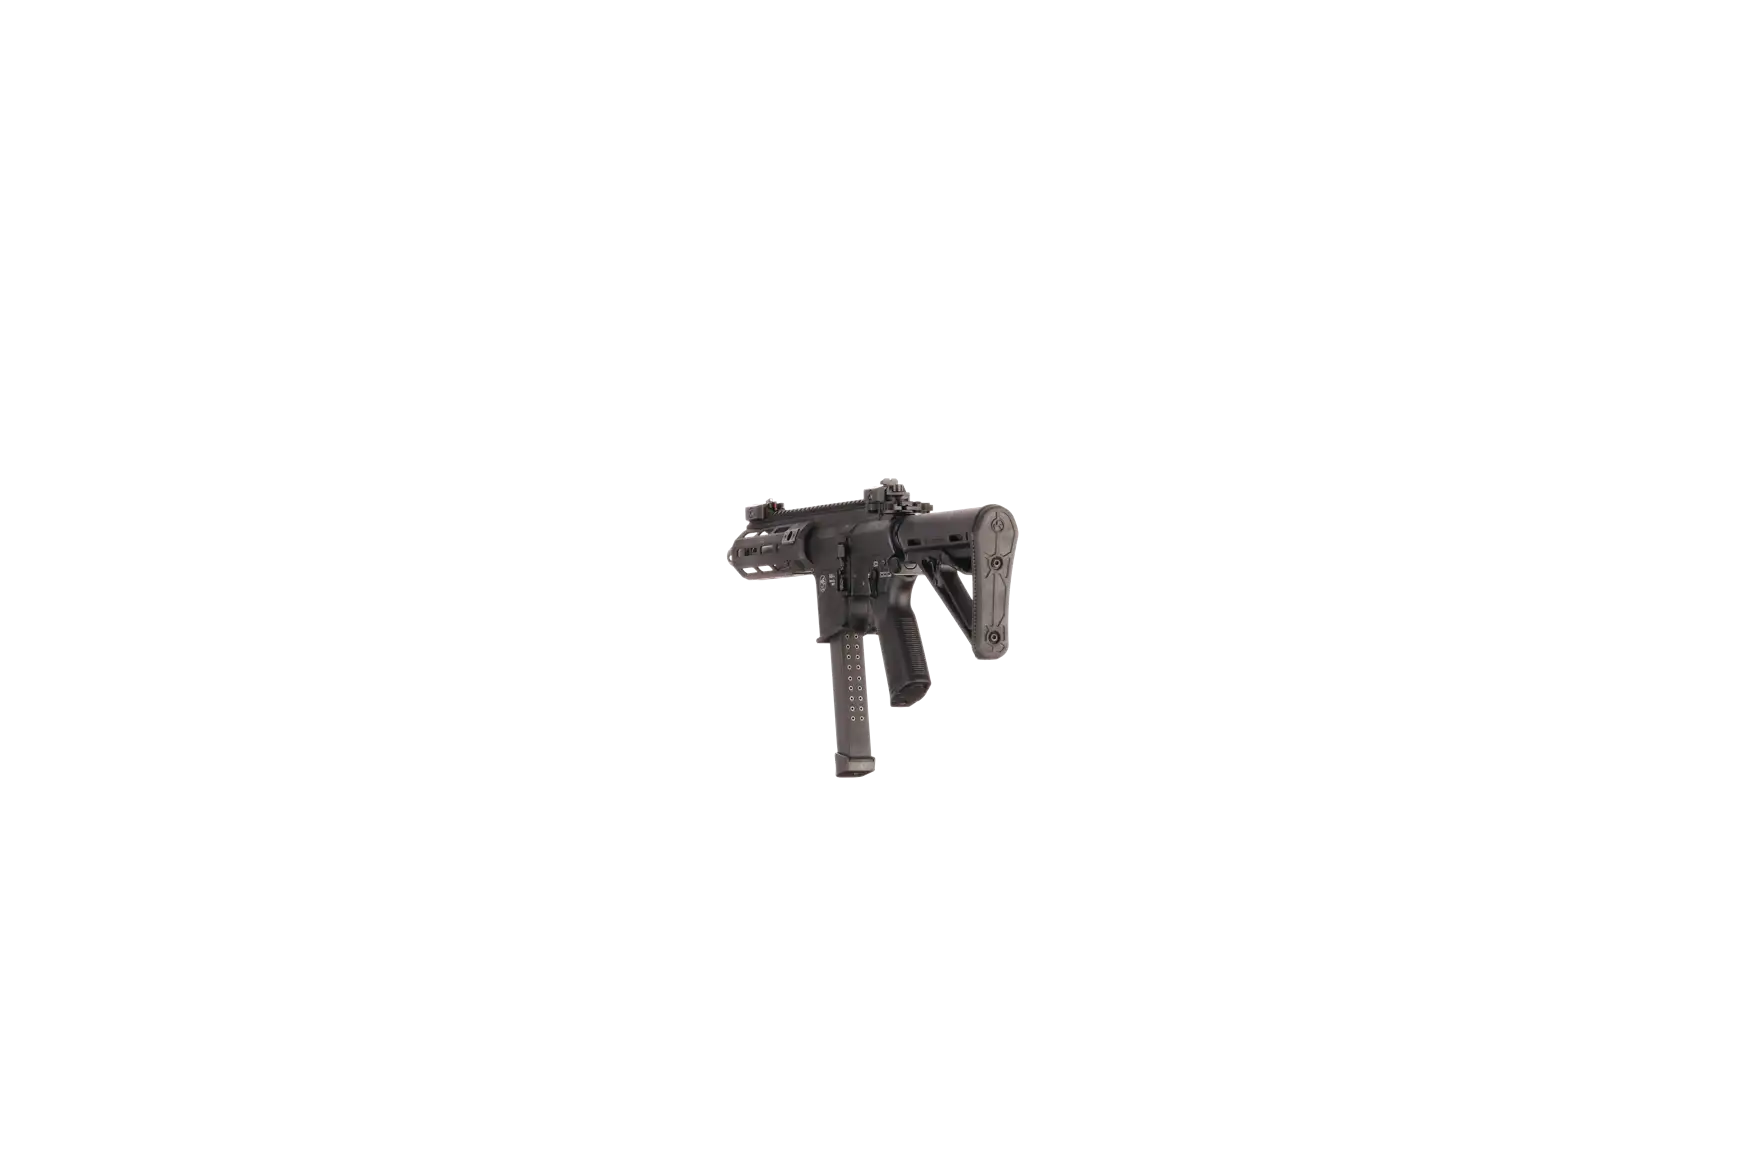 Náhledový obrázek pušky V-AR 9mm luger SPINVIEW 1 R50